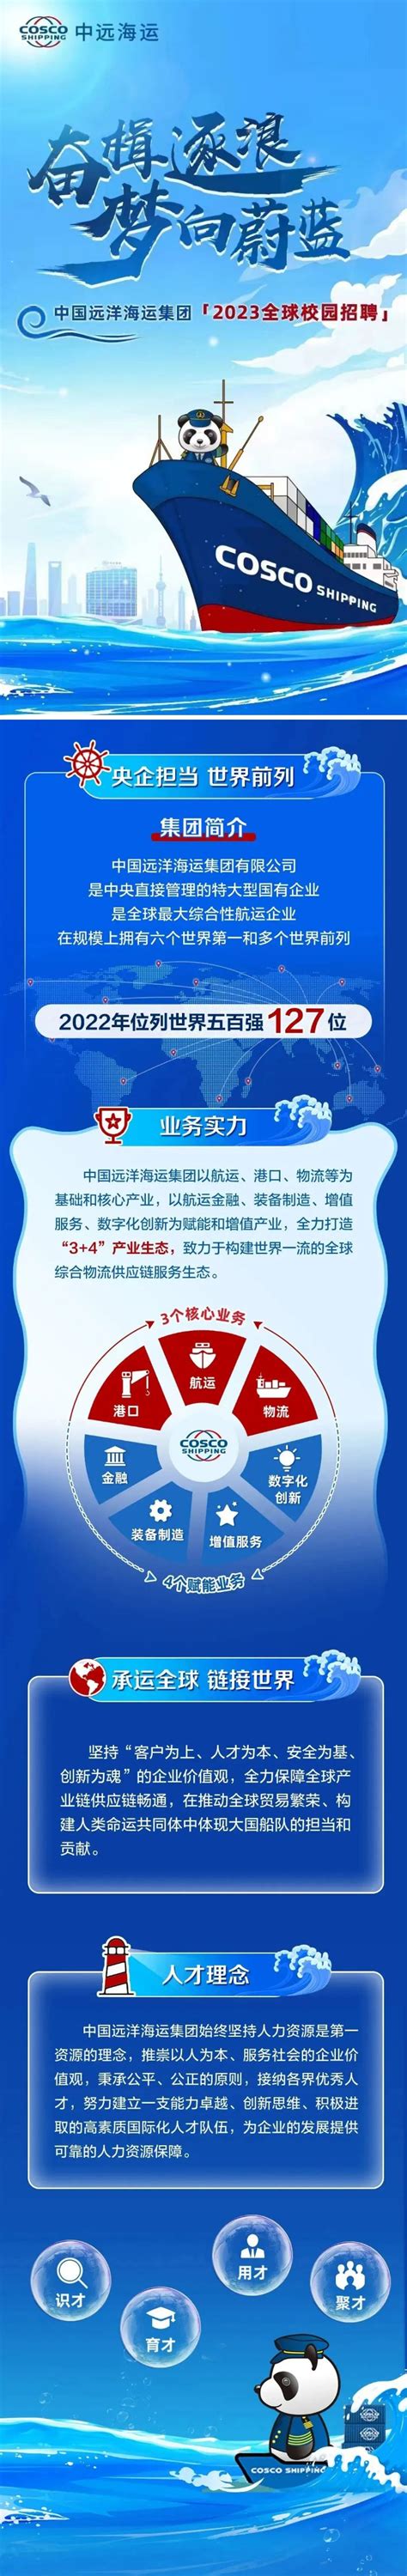 中国远洋海运集团2023全球校园招聘 - 名企实习 我爱竞赛网